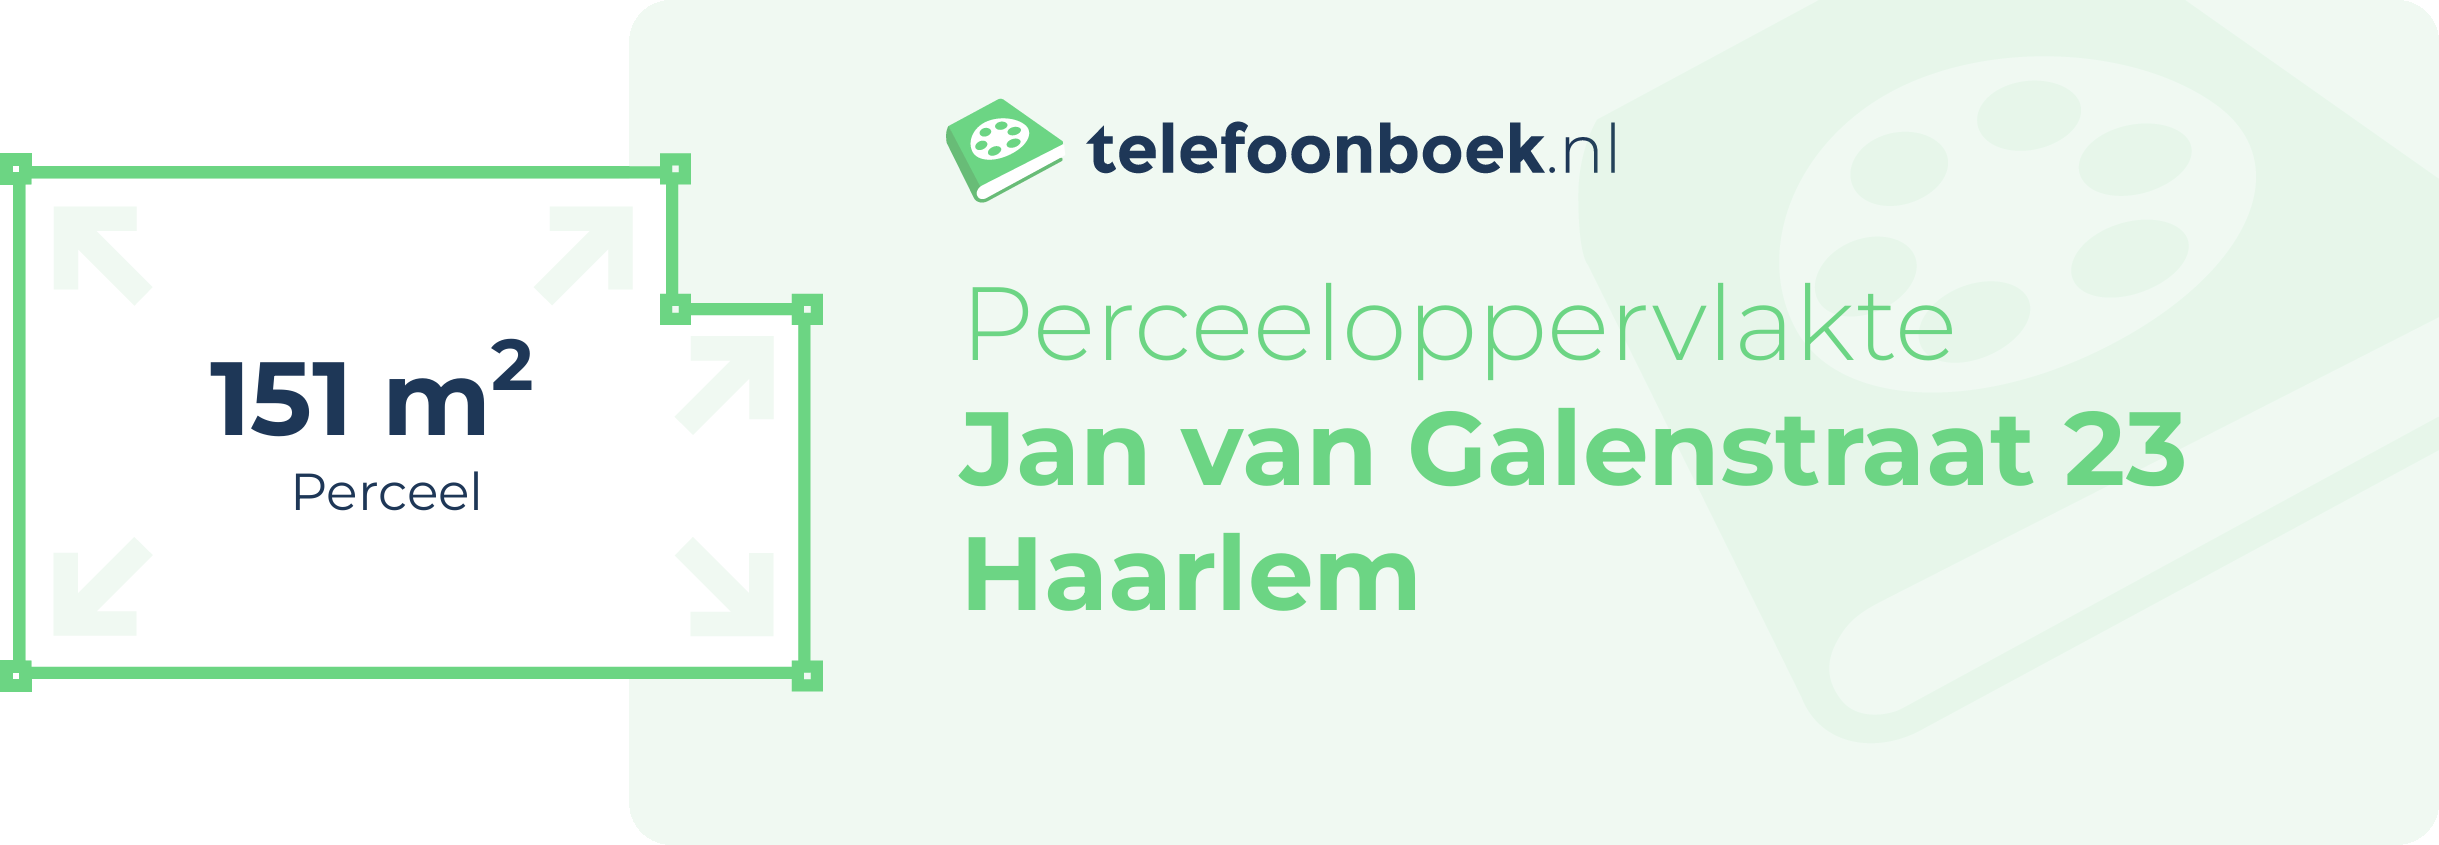 Perceeloppervlakte Jan Van Galenstraat 23 Haarlem